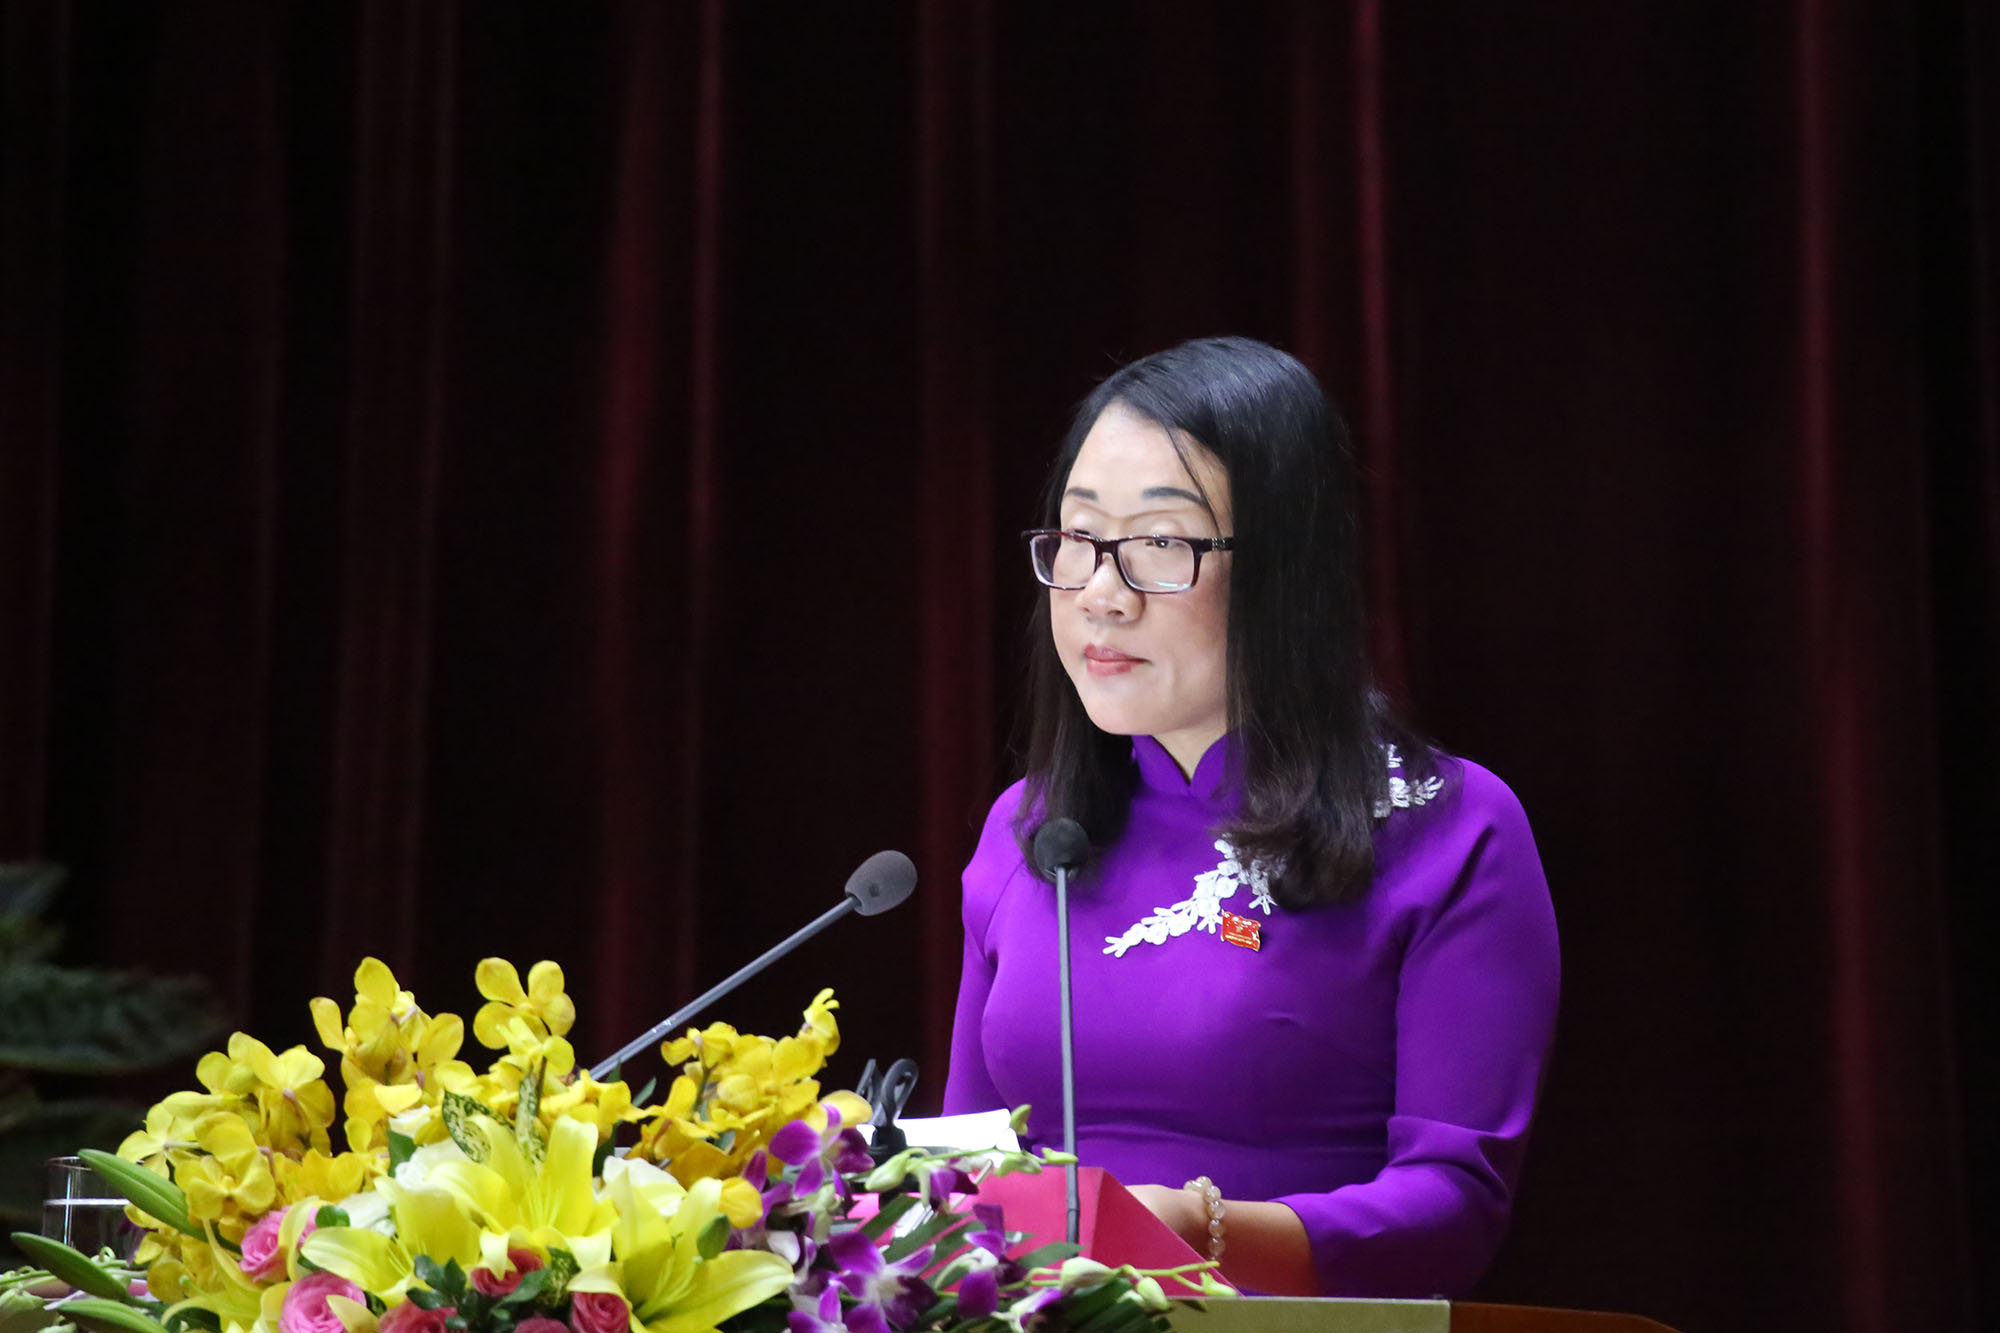 Đồng chí Châu Hoài Thu, Phó trưởng Ban Văn hóa - Xã hội, trình bày các báo cáo thẩm tra.